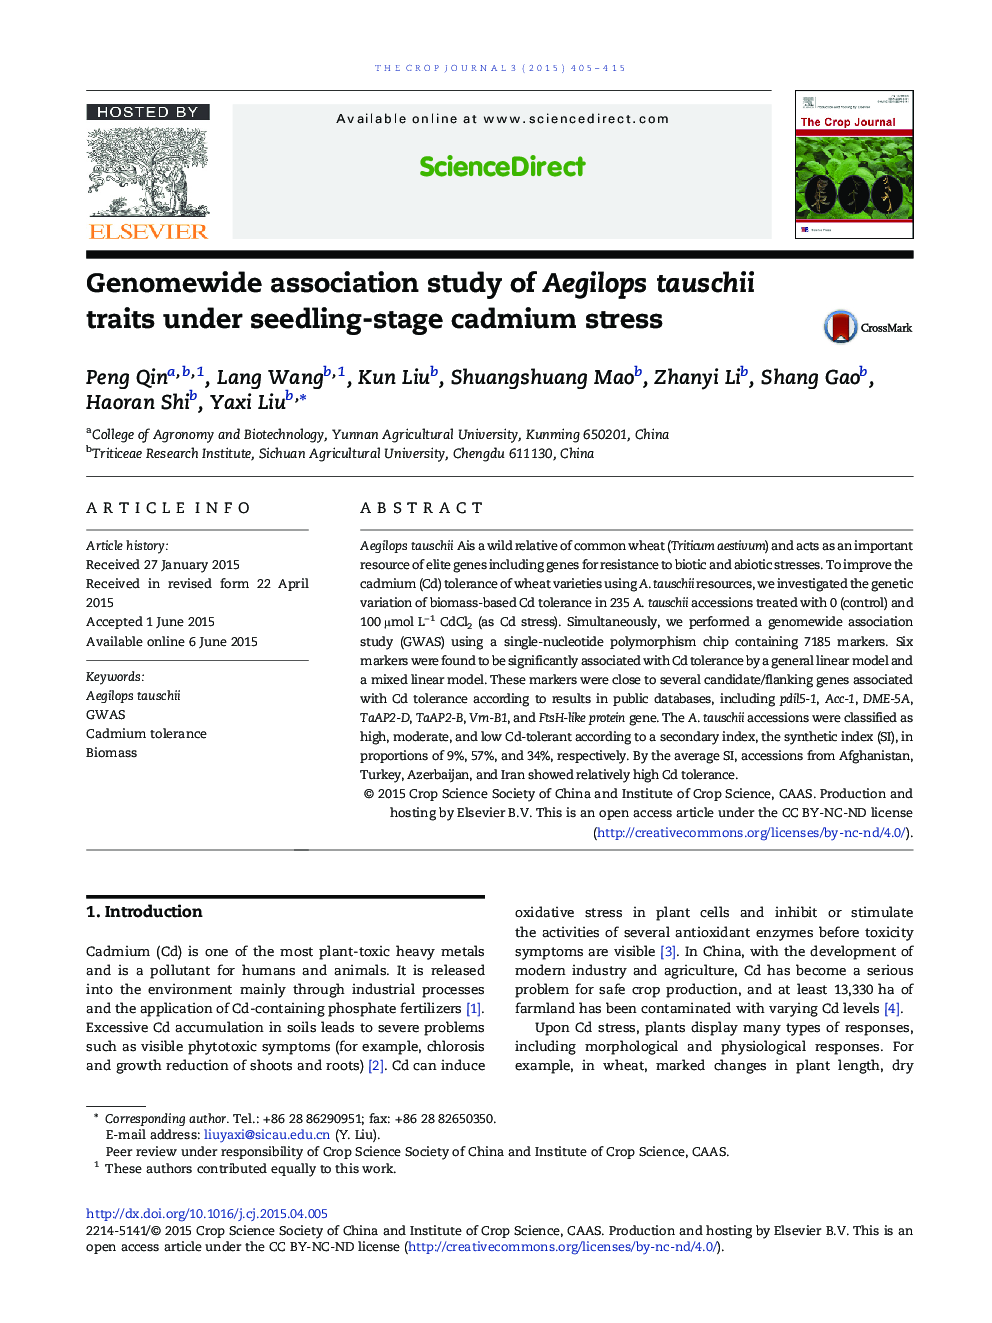 Genomewide association study of Aegilops tauschii traits under seedling-stage cadmium stress 